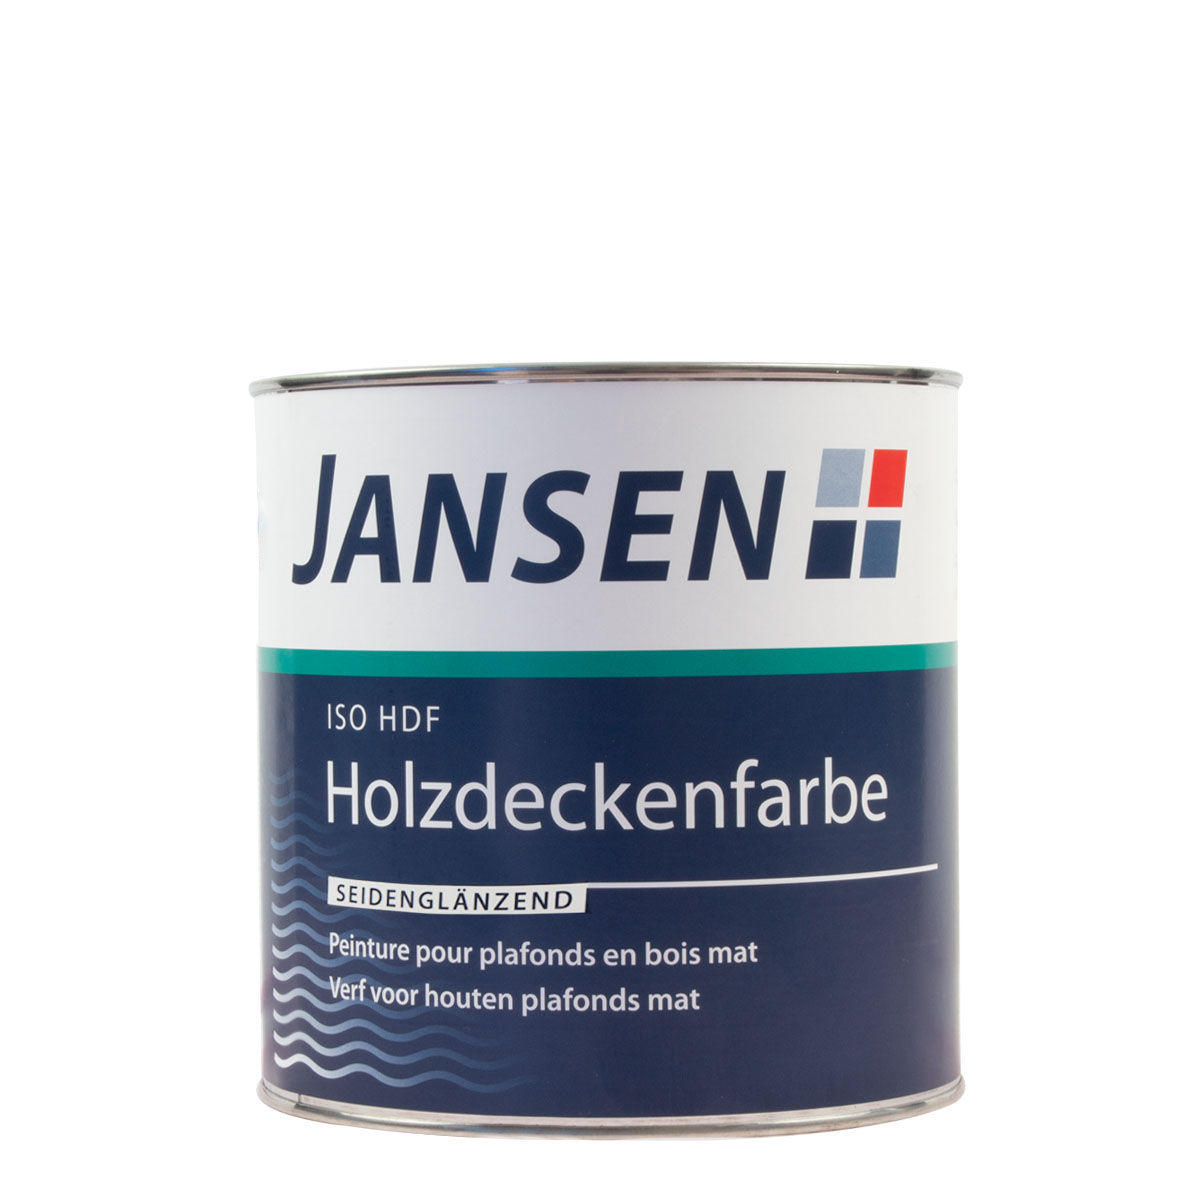 Jansen_ISOHDF_Holzdeckenfarbe_glaensend_0,75_gross